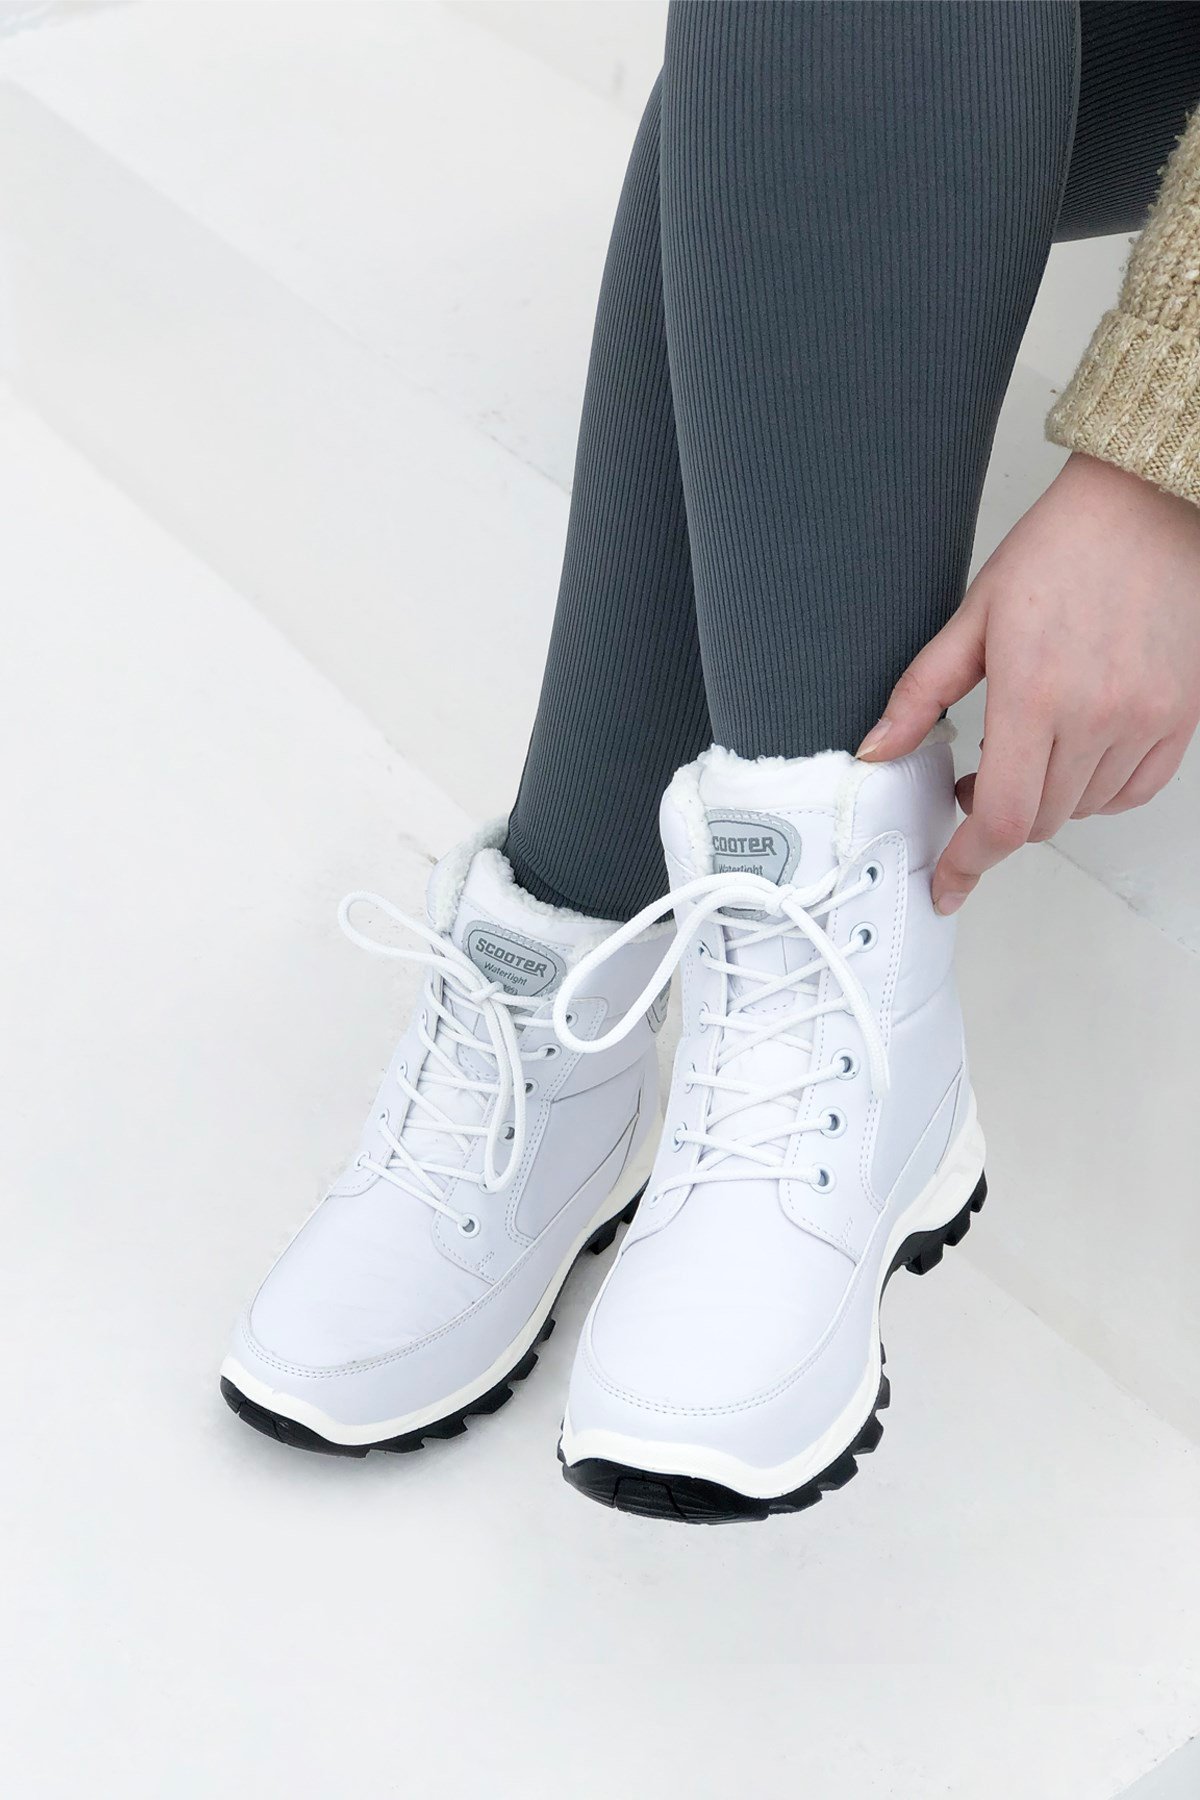 SCOOTER 5548 Kadın Su Geçirmez Bot Tekstil Beyaz | My Bella Shoes